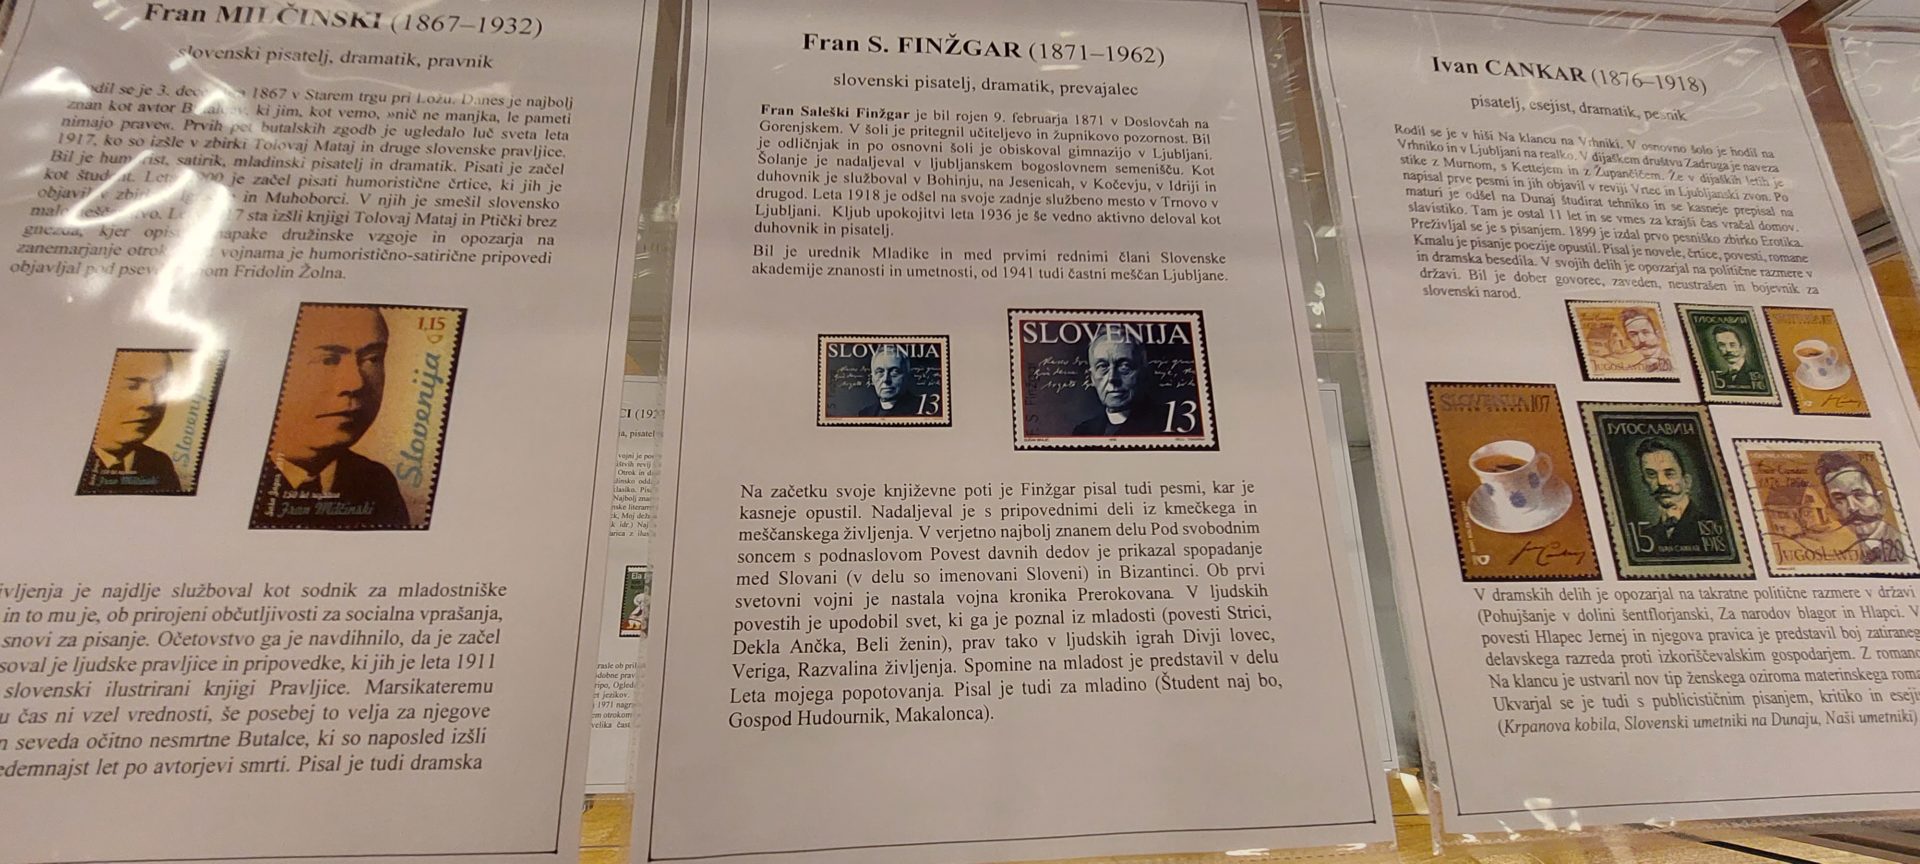 20220524 182707 - Literatura na znamkah - razstava znamk iz zbirke Marinke Cempre Turk